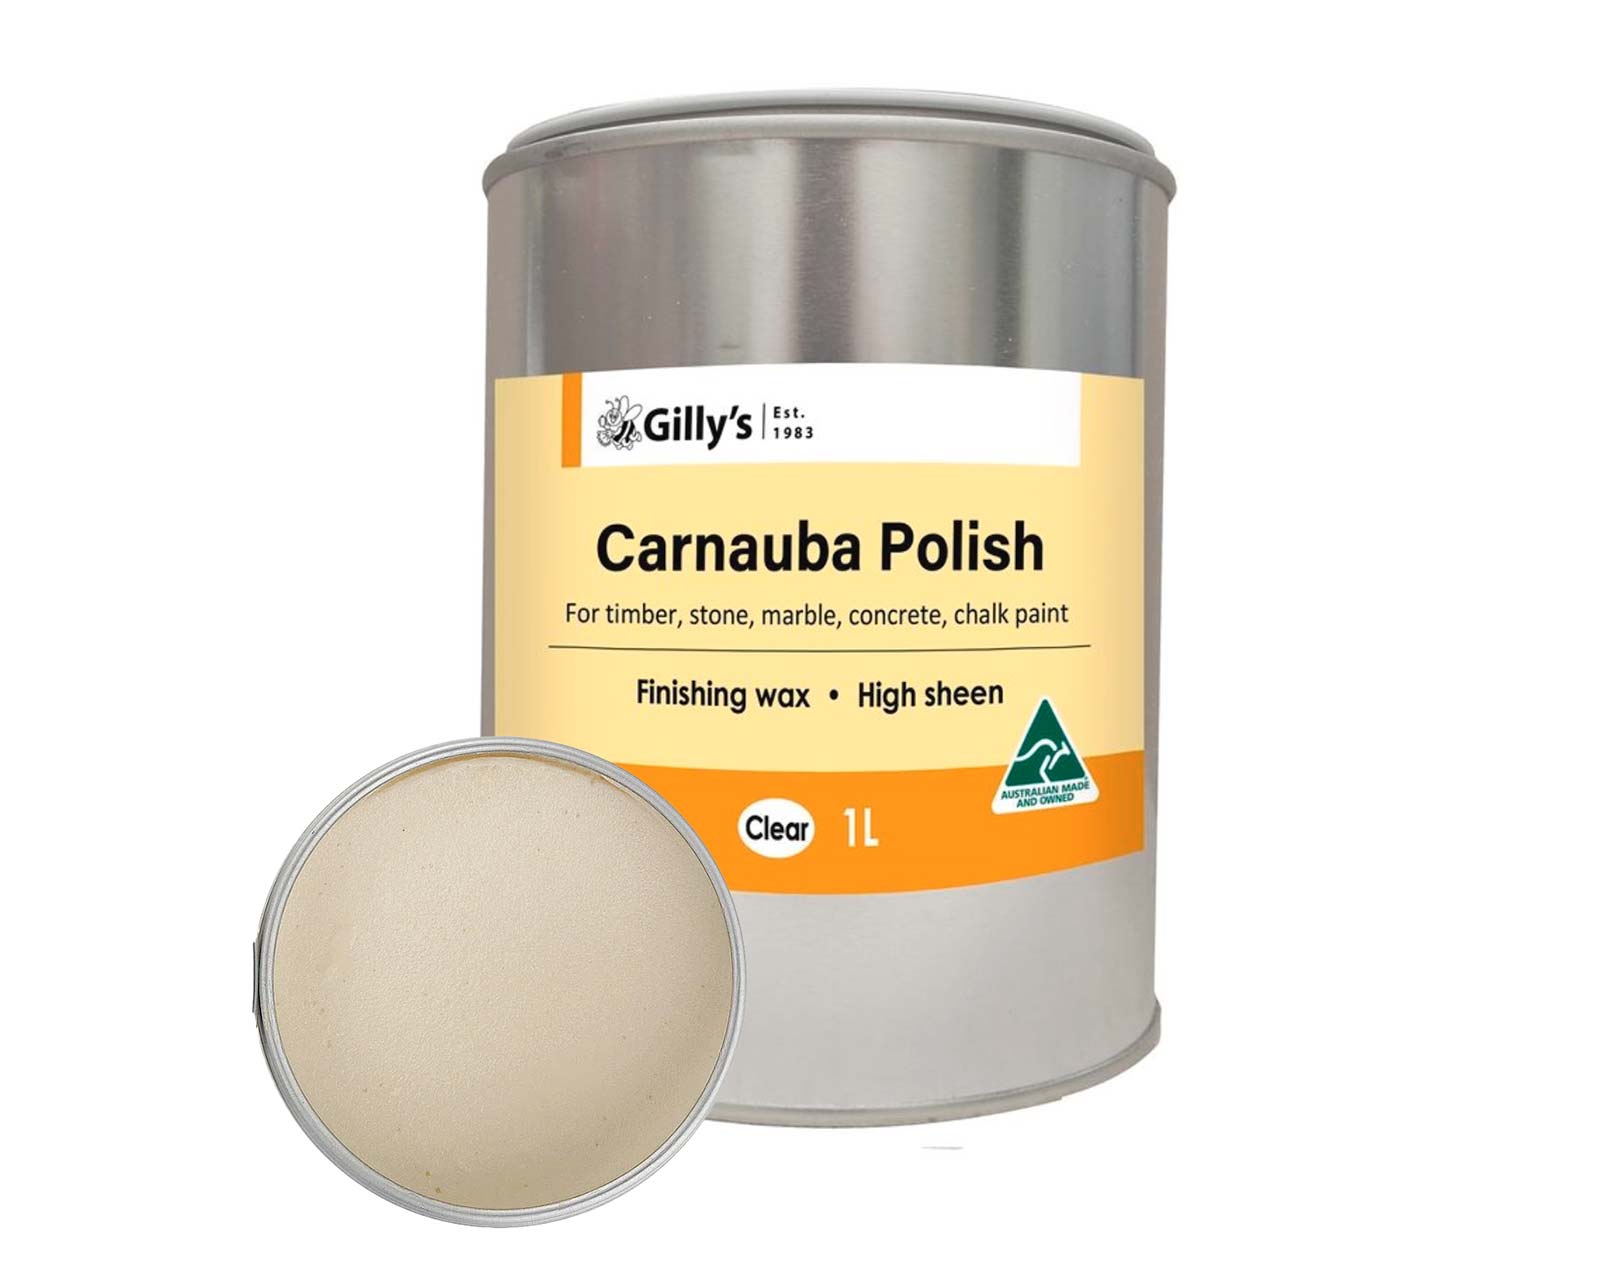 Carnauba Polish - Clear - 1L - Gilly's ®